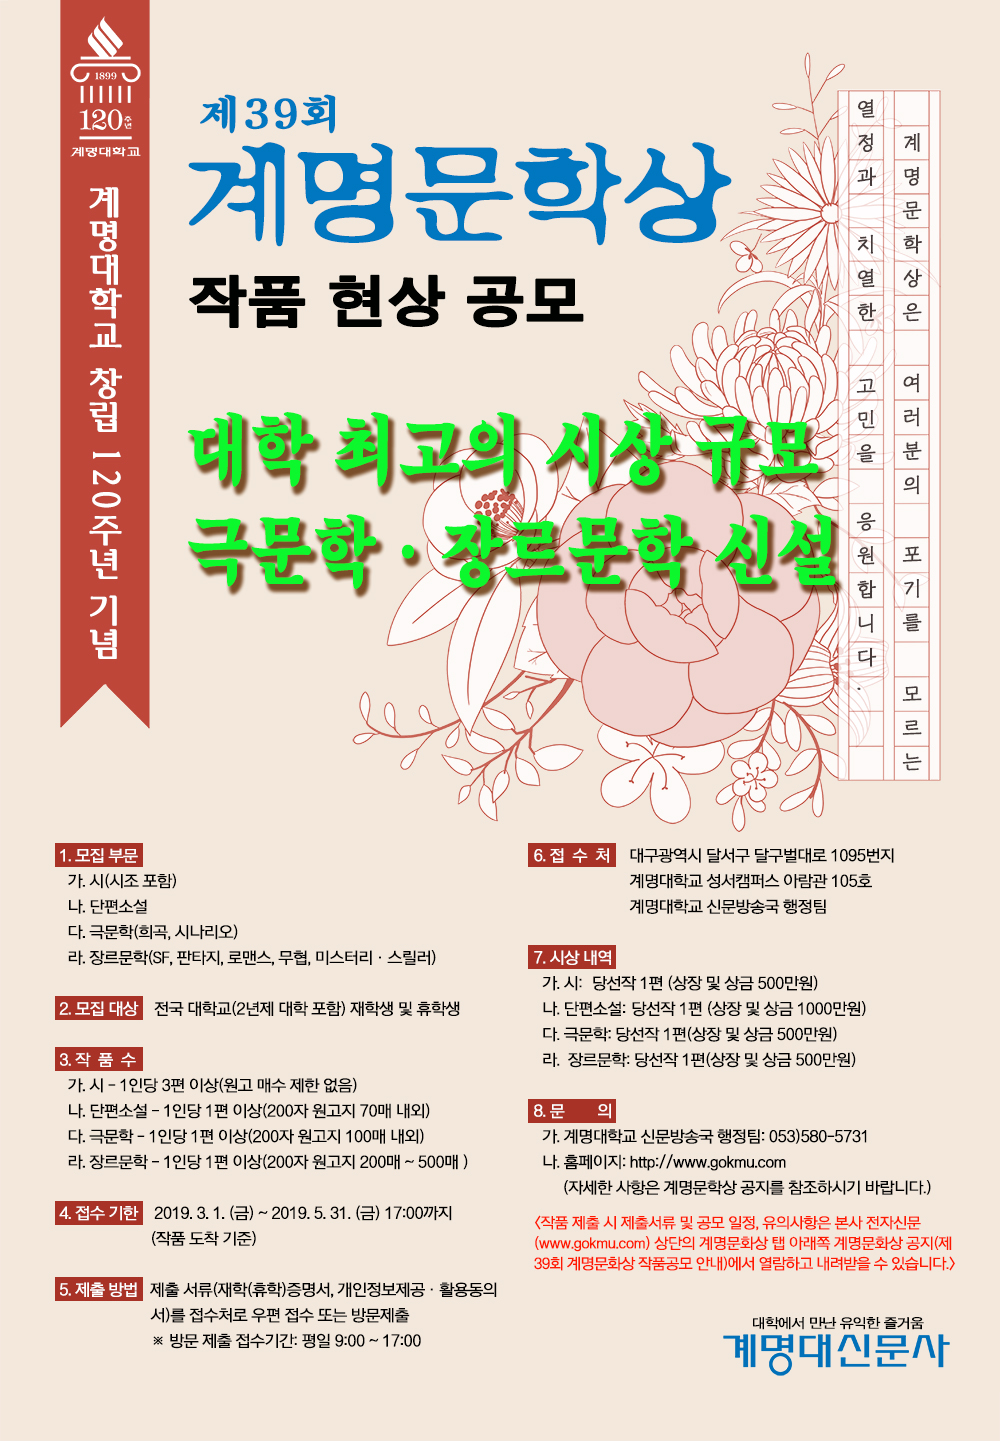 첨부이미지 : 창립 120주년 기념 제39회 계명문학상 광고 포스터.jpg